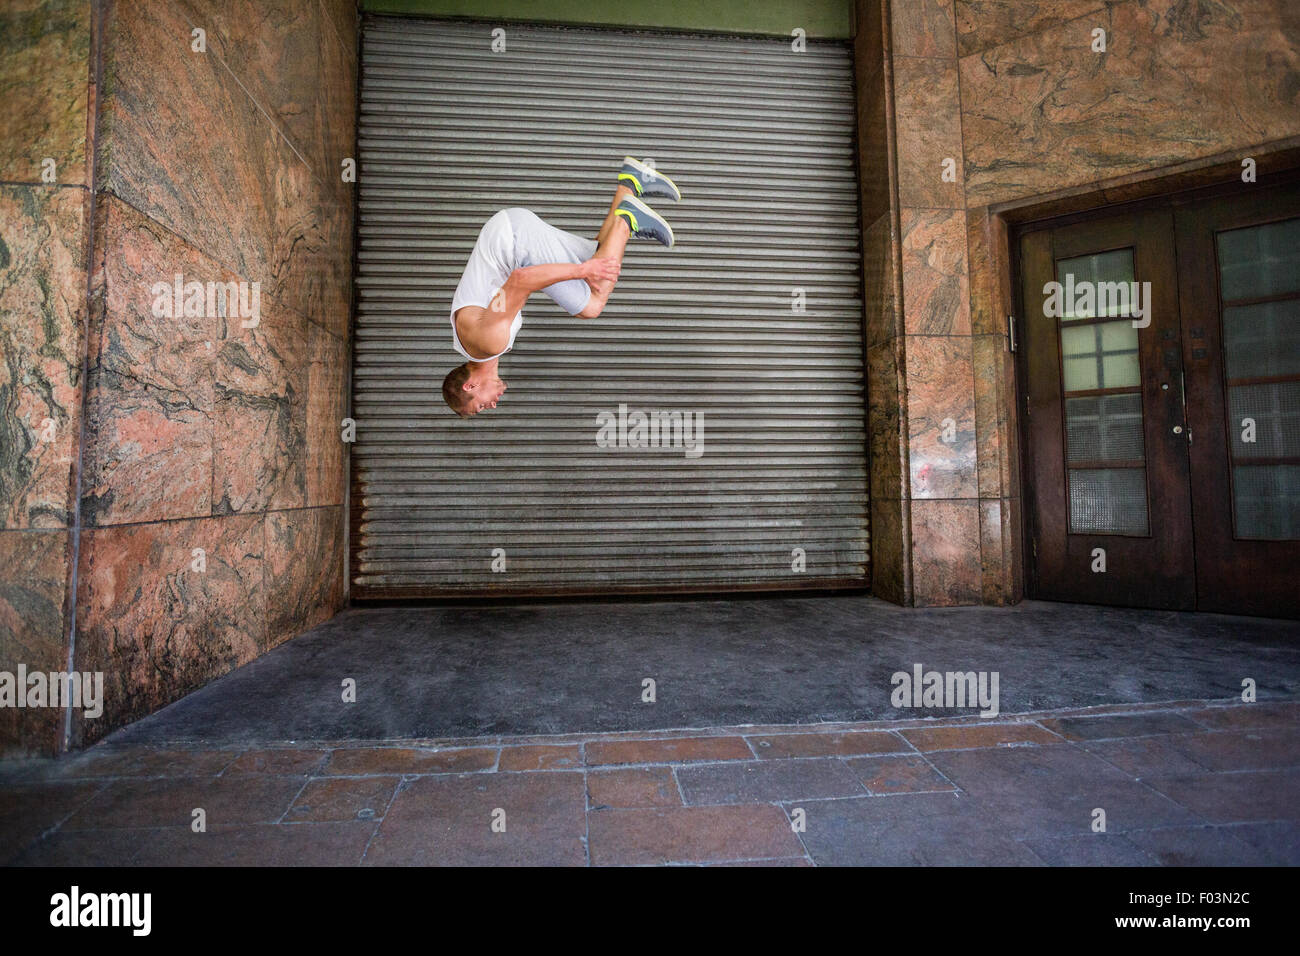 Extremsportler dabei einen Frontflip vor einem Gebäude Stockfoto